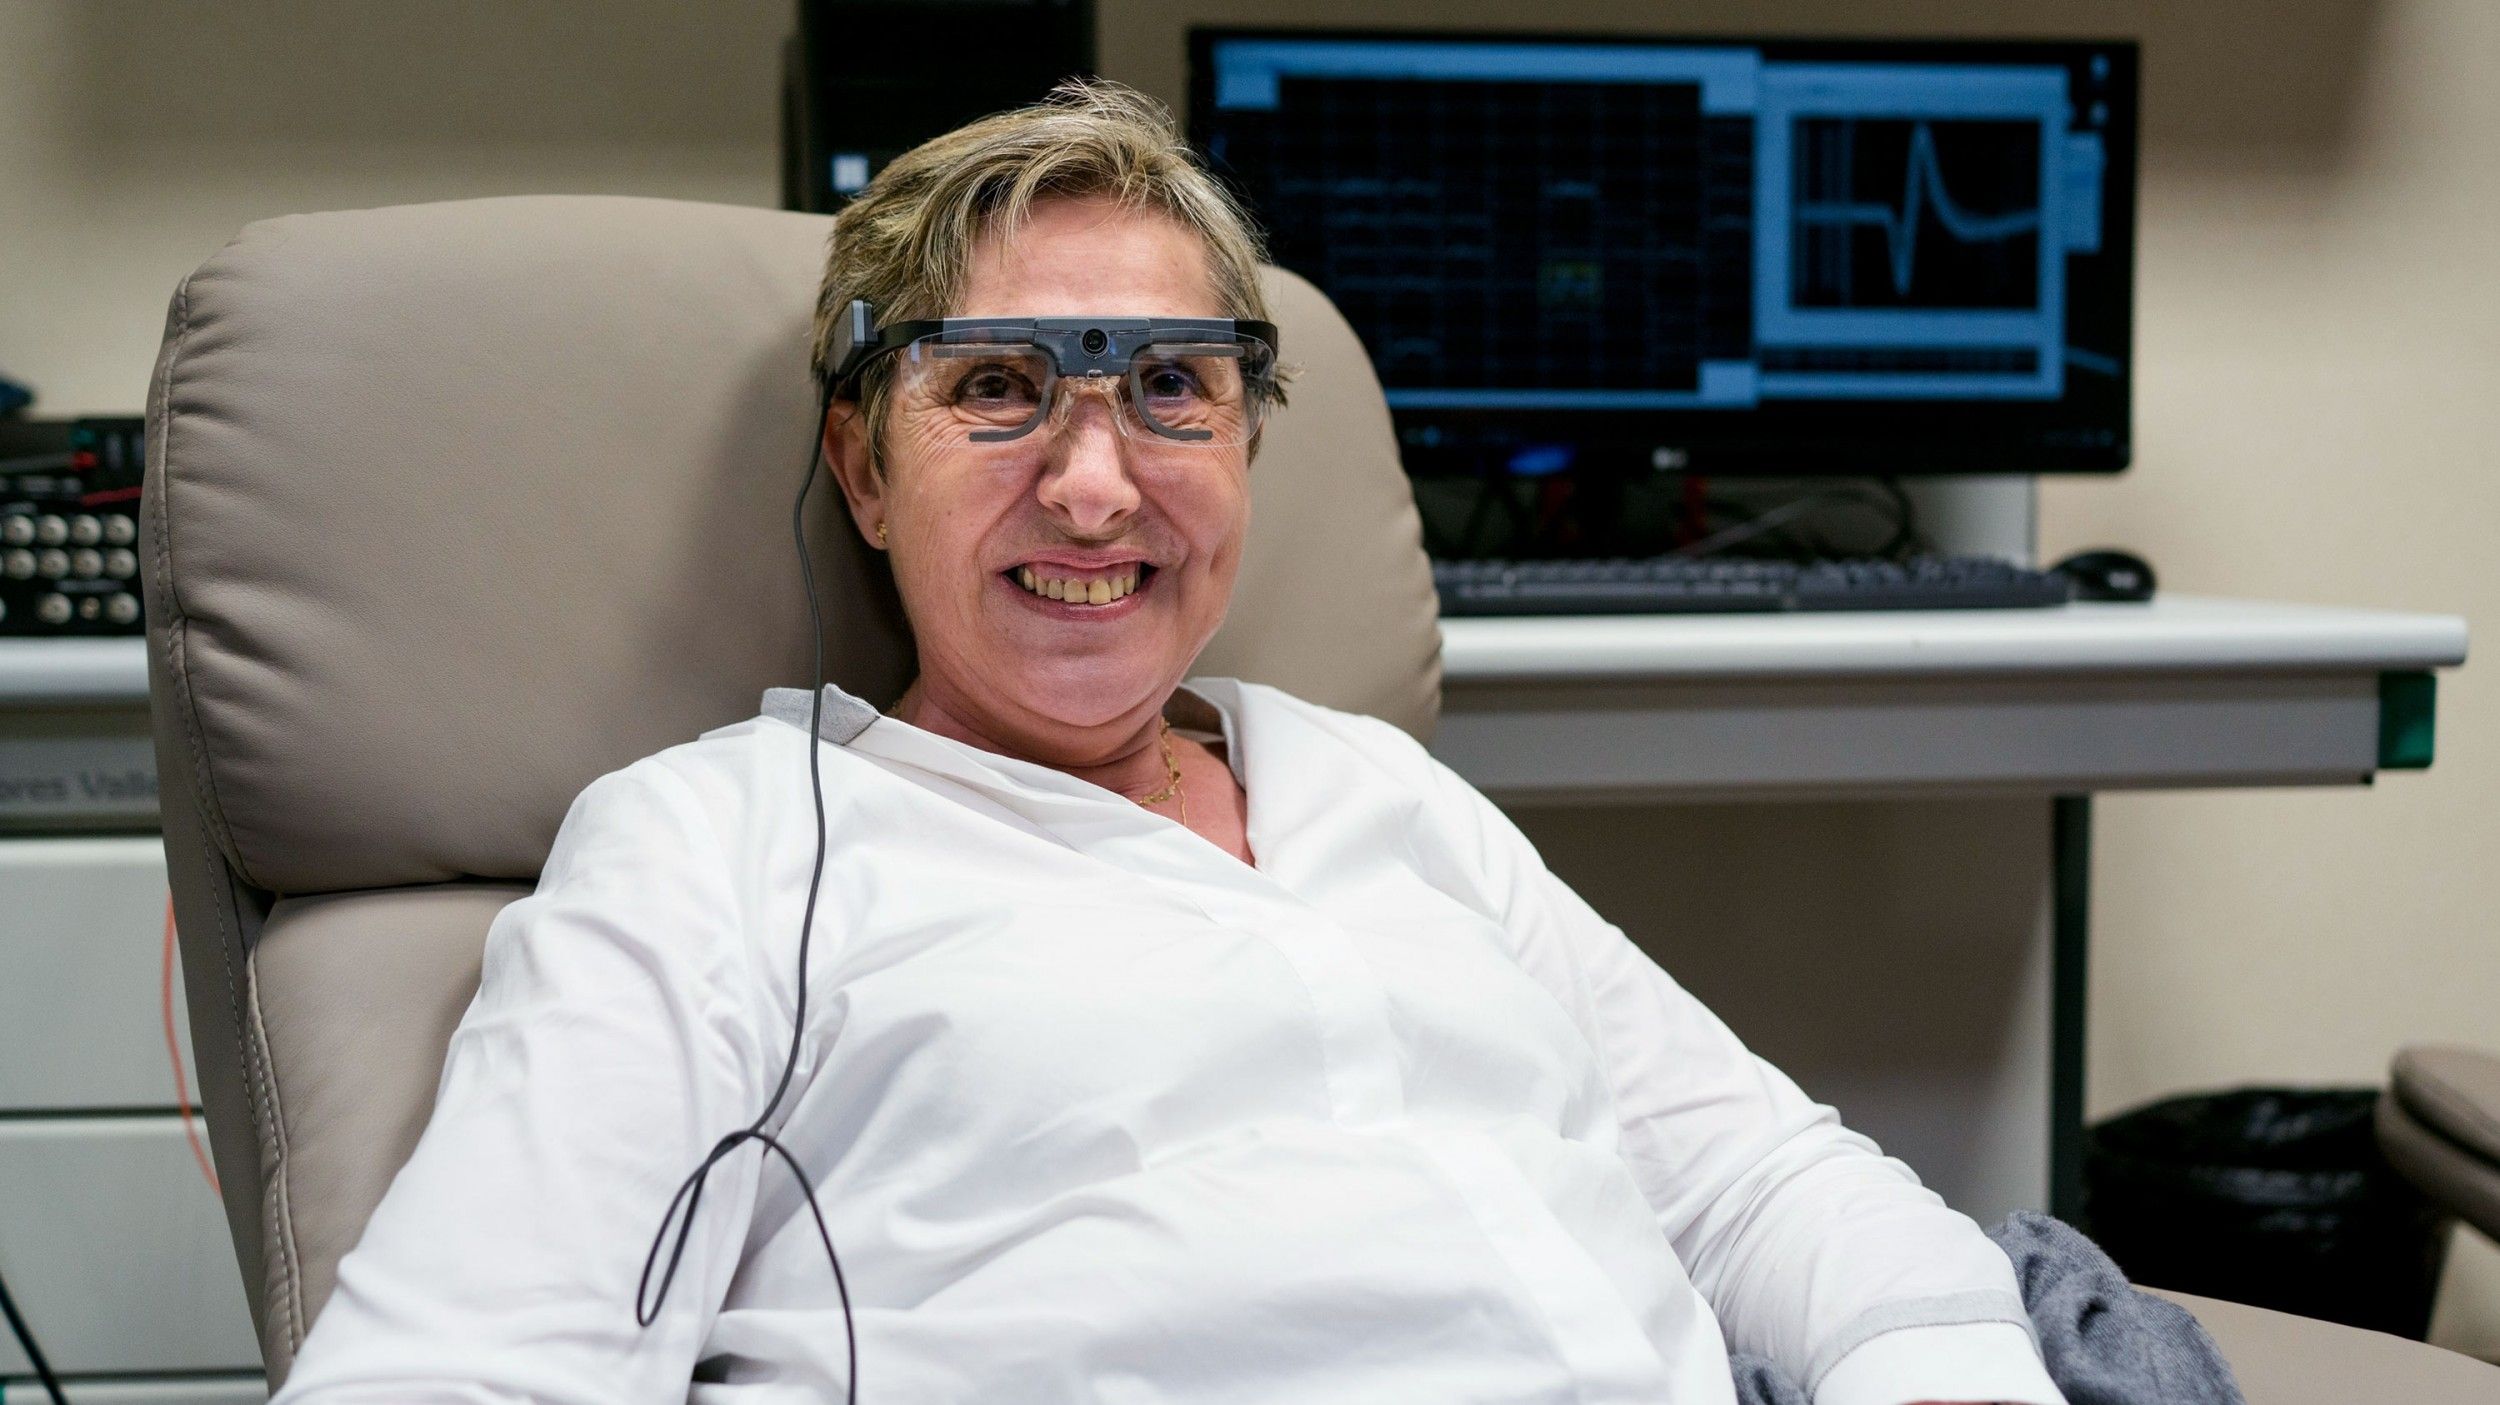 Una mujer ciega consigue percibir siluetas y letras gracias a un implante cerebral